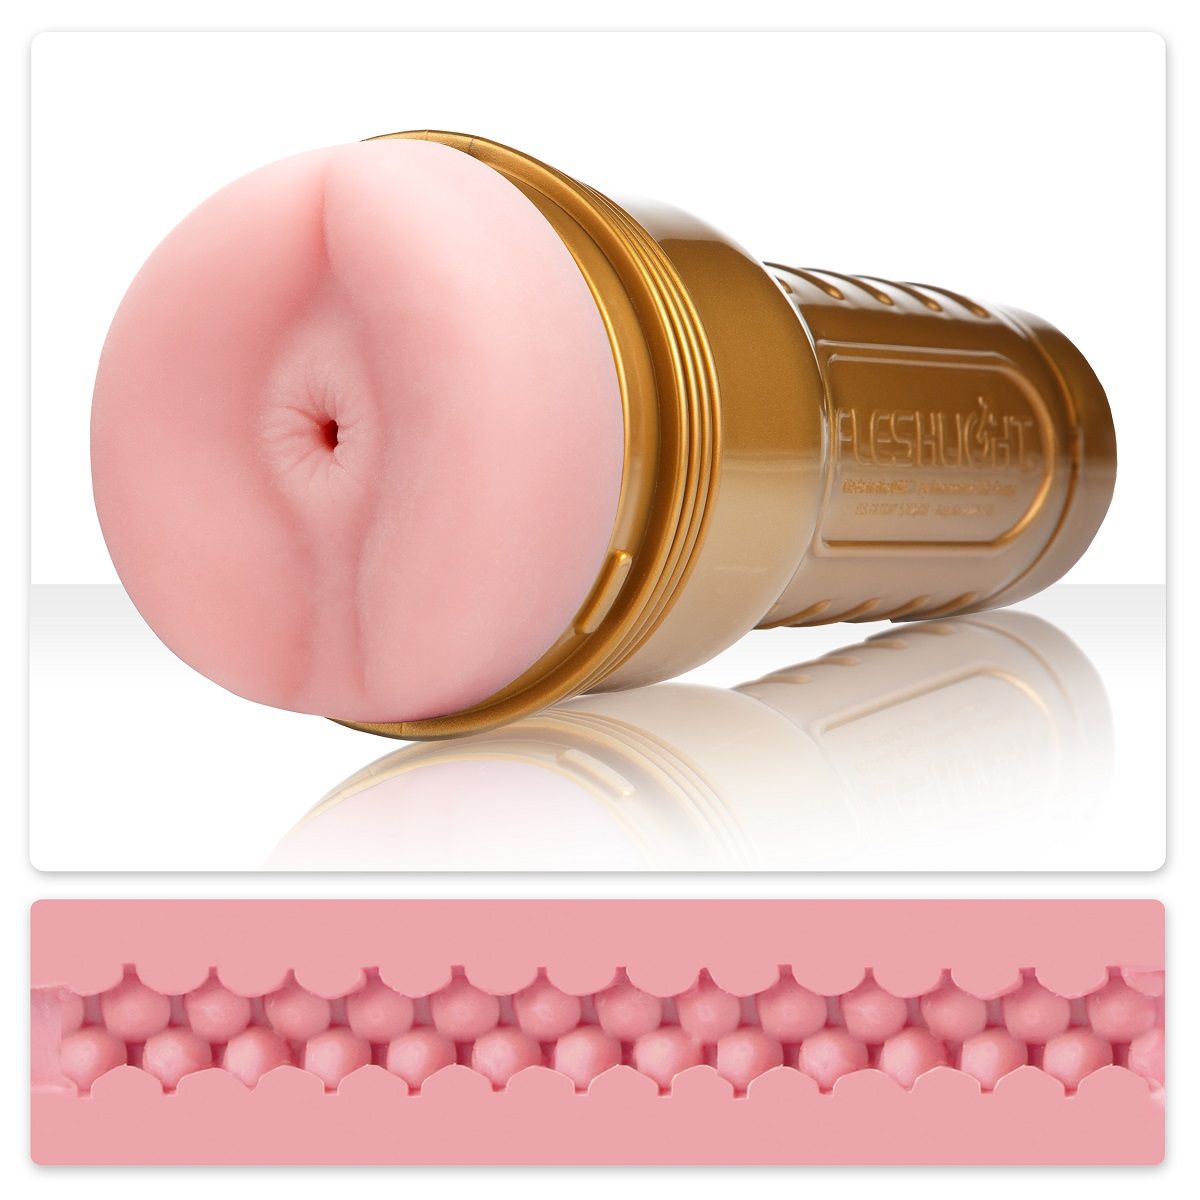 Легендарная секс-игрушка  Fleshlight для мужчин!  Специальная усиленная текстура и реалистичные ощущения позволяют тренировать выносливость. Мягкий, податливый рукав этого мастурбатора изготовлен из запатентованного высококачественного материала, Pink Butt Stamina дает невероятные и незабываемые ощущения. Внутренний рельеф, состоящий из небольших гладких пупырышек по всей длине рукава, в сочетании с узким и плотным каналом производит взрывной эффект! <br><br>  С Fleshlight Gold Stamina Вы сможете регулярно практиковаться и с каждым разом улучшать время своего удовольствия. Перед использованием можно на некоторое время погрузить рукав мастурбатора в теплую воду, чтобы добавить реалистичных ощущений. Корпус мастурбатора выглядит как обычный фонарик и не привлекает постороннего внимания.